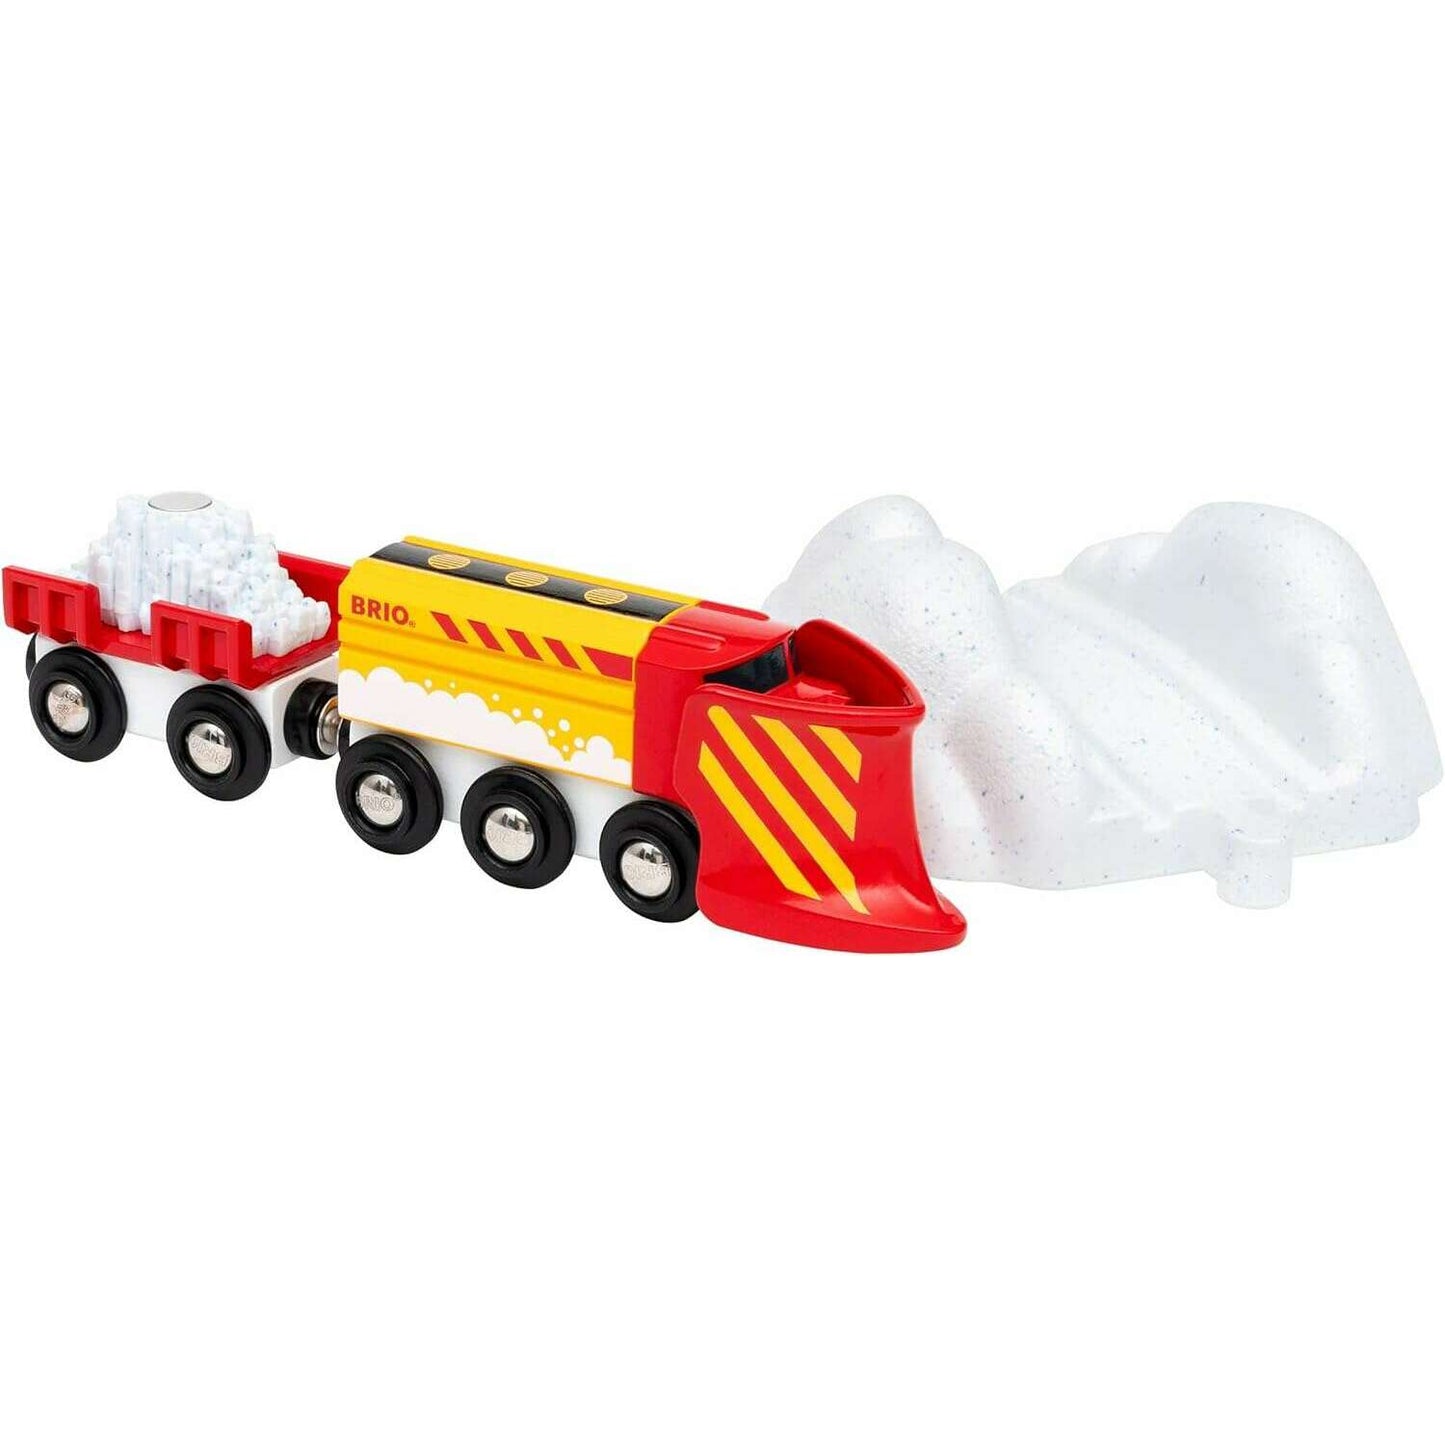 Toys N Tuck:Brio 33606 Snow Plow Train,Brio